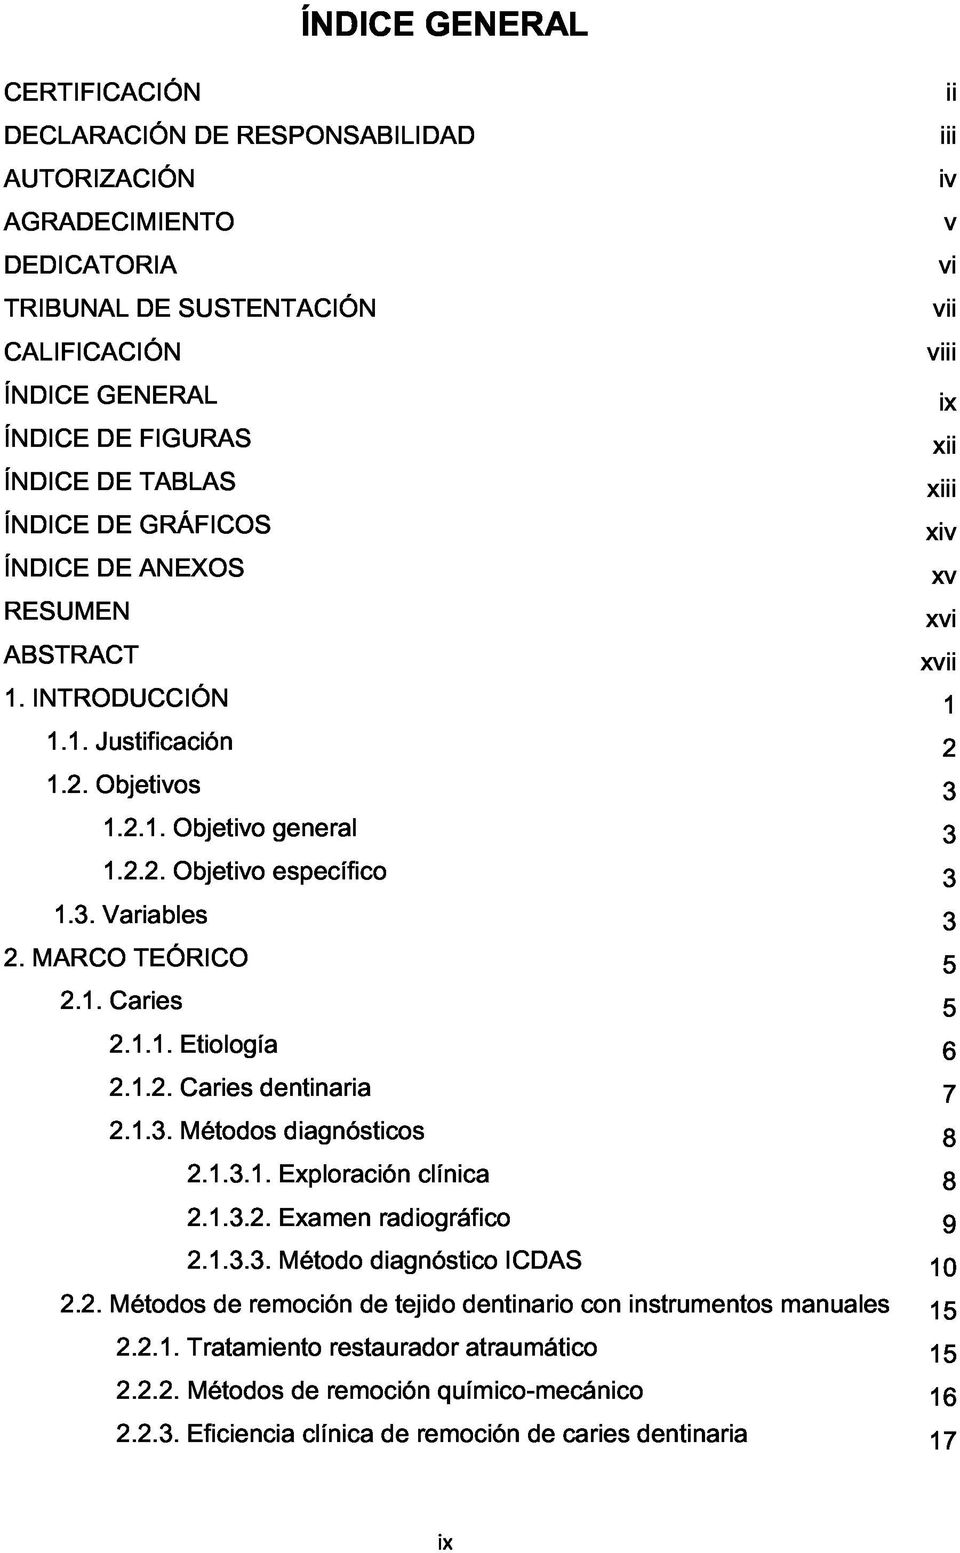 3. Variables 3 2. MARCO TEÓRICO 5 2.1. Caries 5 2.1.1. Etiología 6 2.1.2. Caries dentinaria 7 2.1.3. Métodos diagnósticos 8 2.1.3.1. Exploración clínica 8 2.1.3.2. Examen radiográfico g 2.1.3.3. Método diagnóstico ICDAS <10 2.